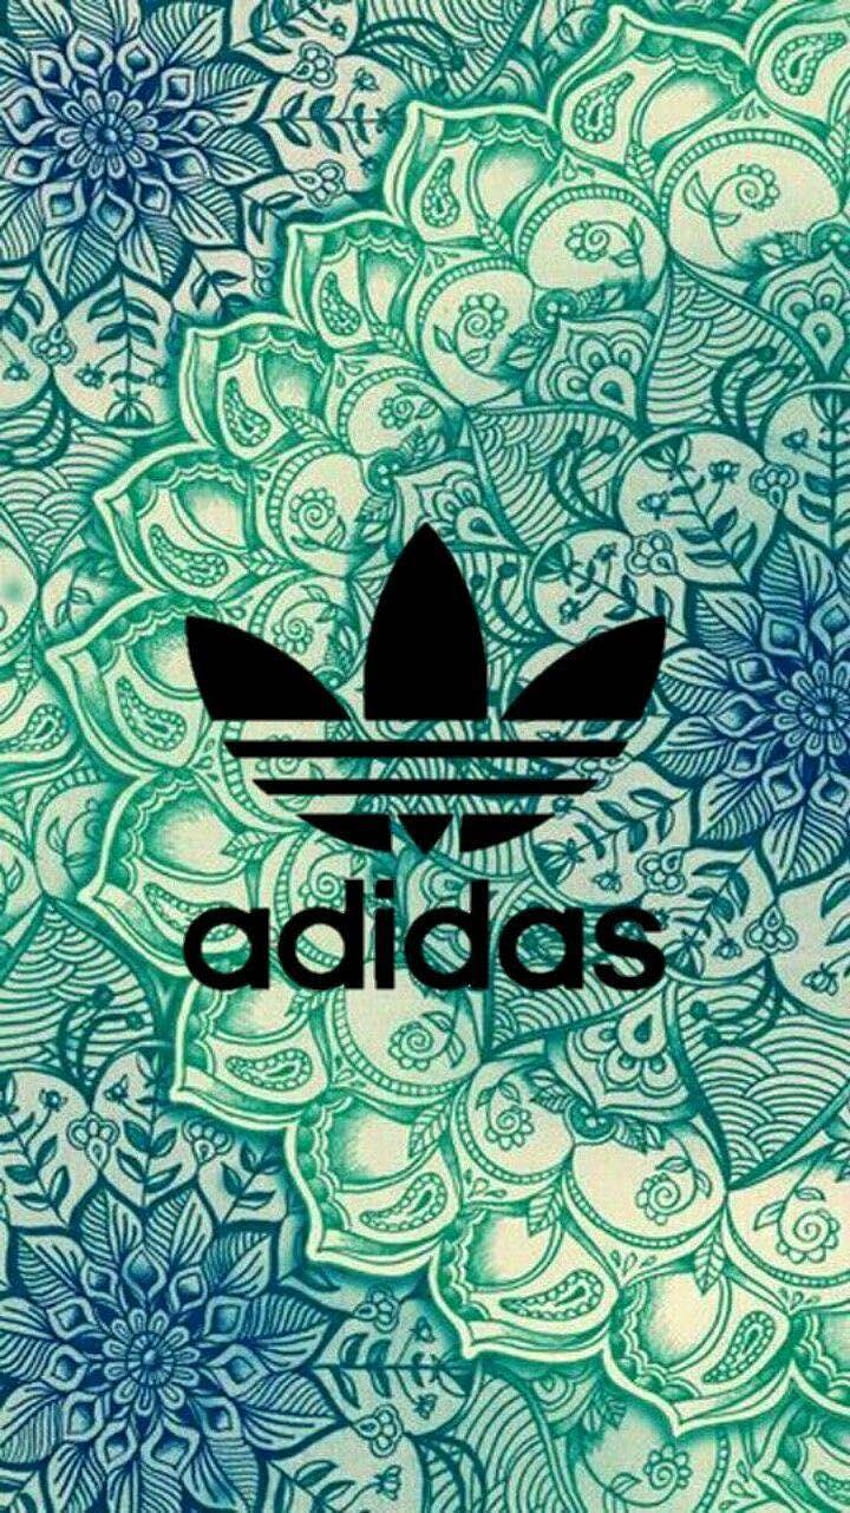 Rabari Ketan Nike Tumblr , Bape , adidas aesthetic HD phone wallpaper ...